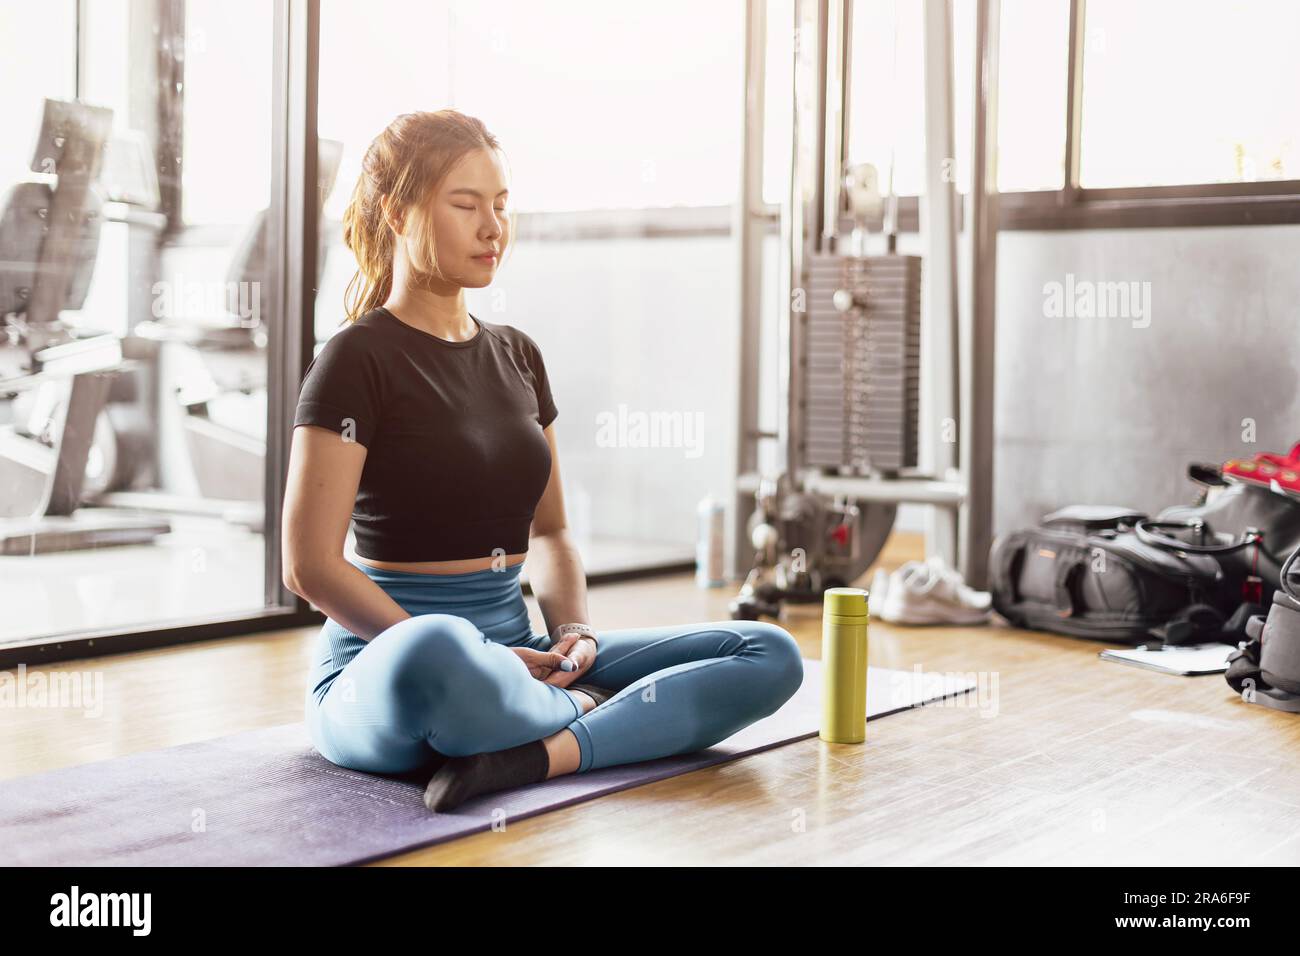 Jeune femme asiatique pratiquant le yoga assis dans l'exercice de méditation, repos calme relax poser s'entraîner en portant des vêtements de sport, séance de méditation sport en intérieur Banque D'Images